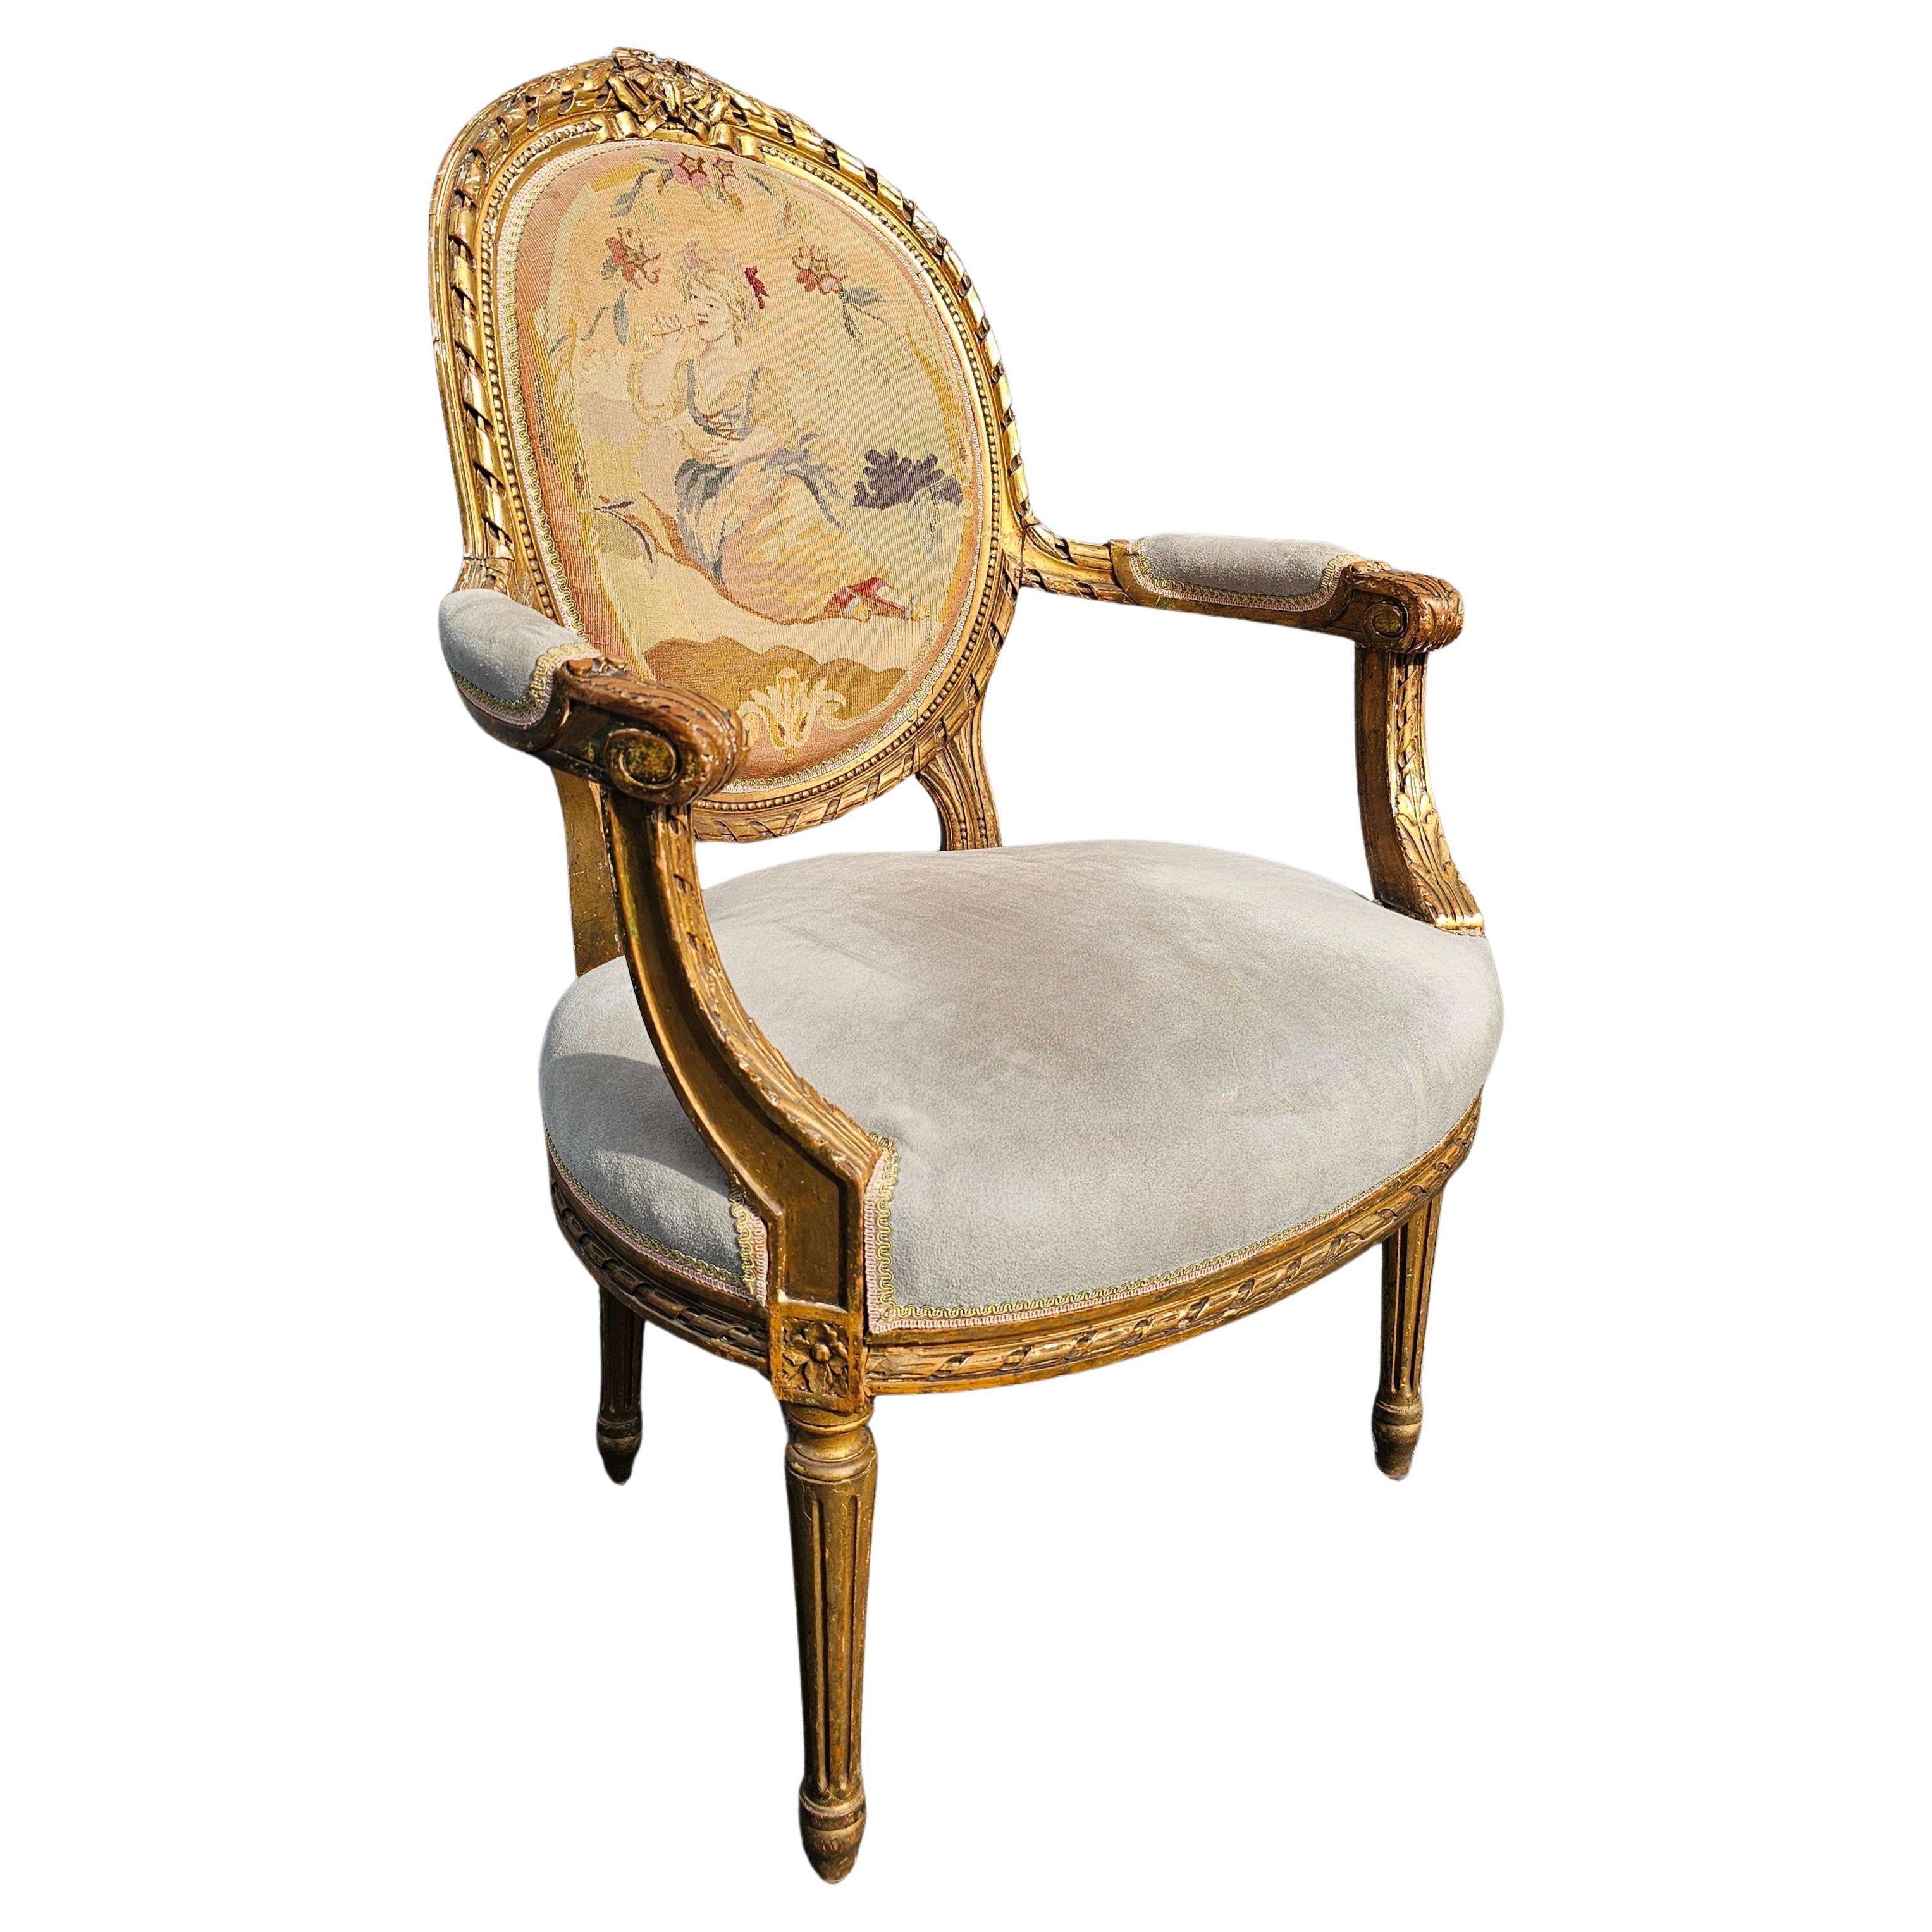 Fauteuil de style Louis XVI, doré, en cuir de daim et tapissé de points d'aiguille